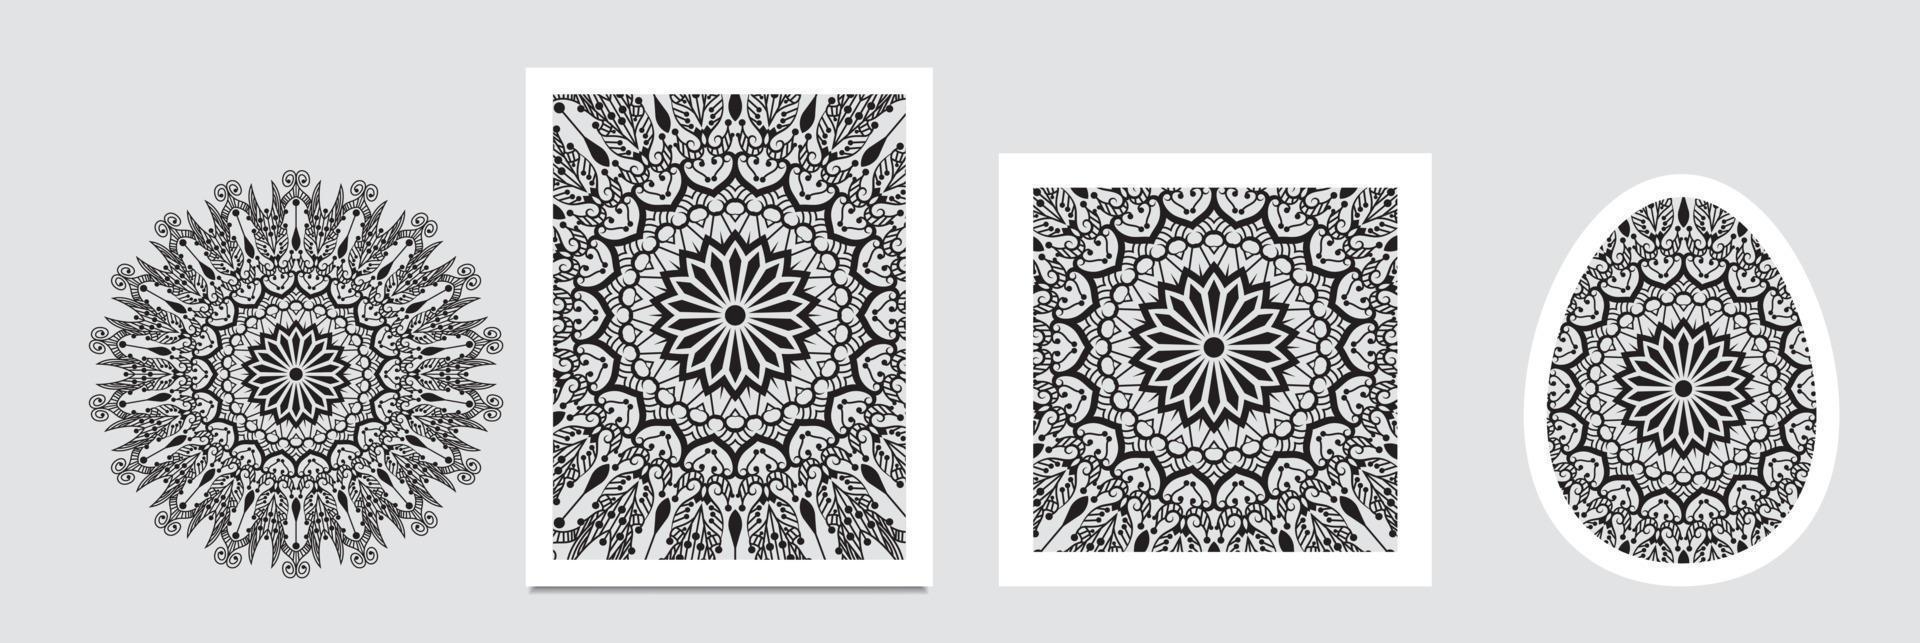 bandera de mandalas fondo de mandala de flores decorativas con lugar para texto. gráficos abstractos coloridos. estilo árabe islámico oriental vector